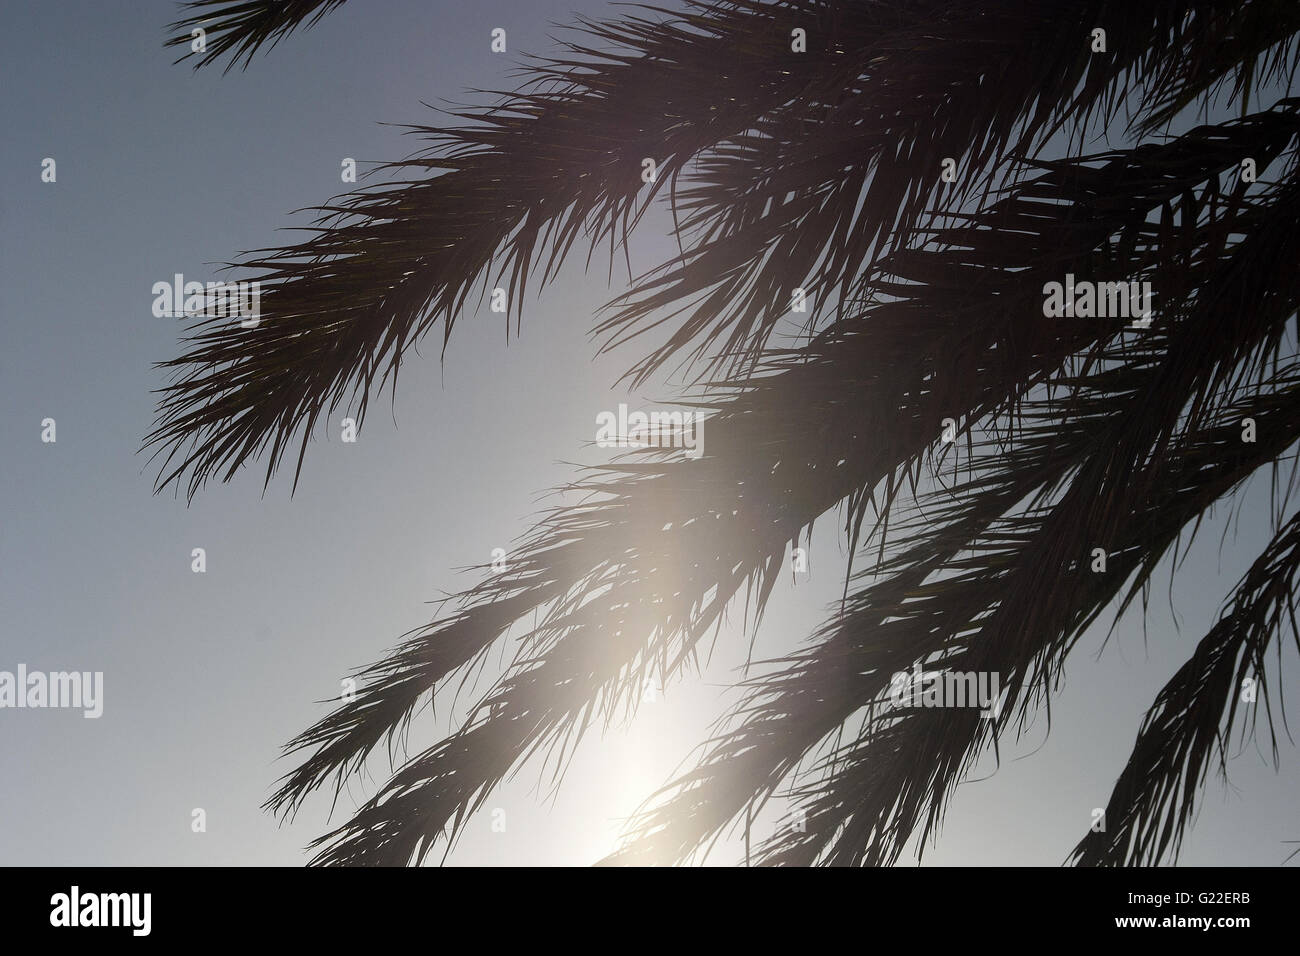 Une belle image poétique de palmier leafs contre un ciel lumineux dans la ville de Palma, Palma de Mallorca, Espagne, mer Banque D'Images